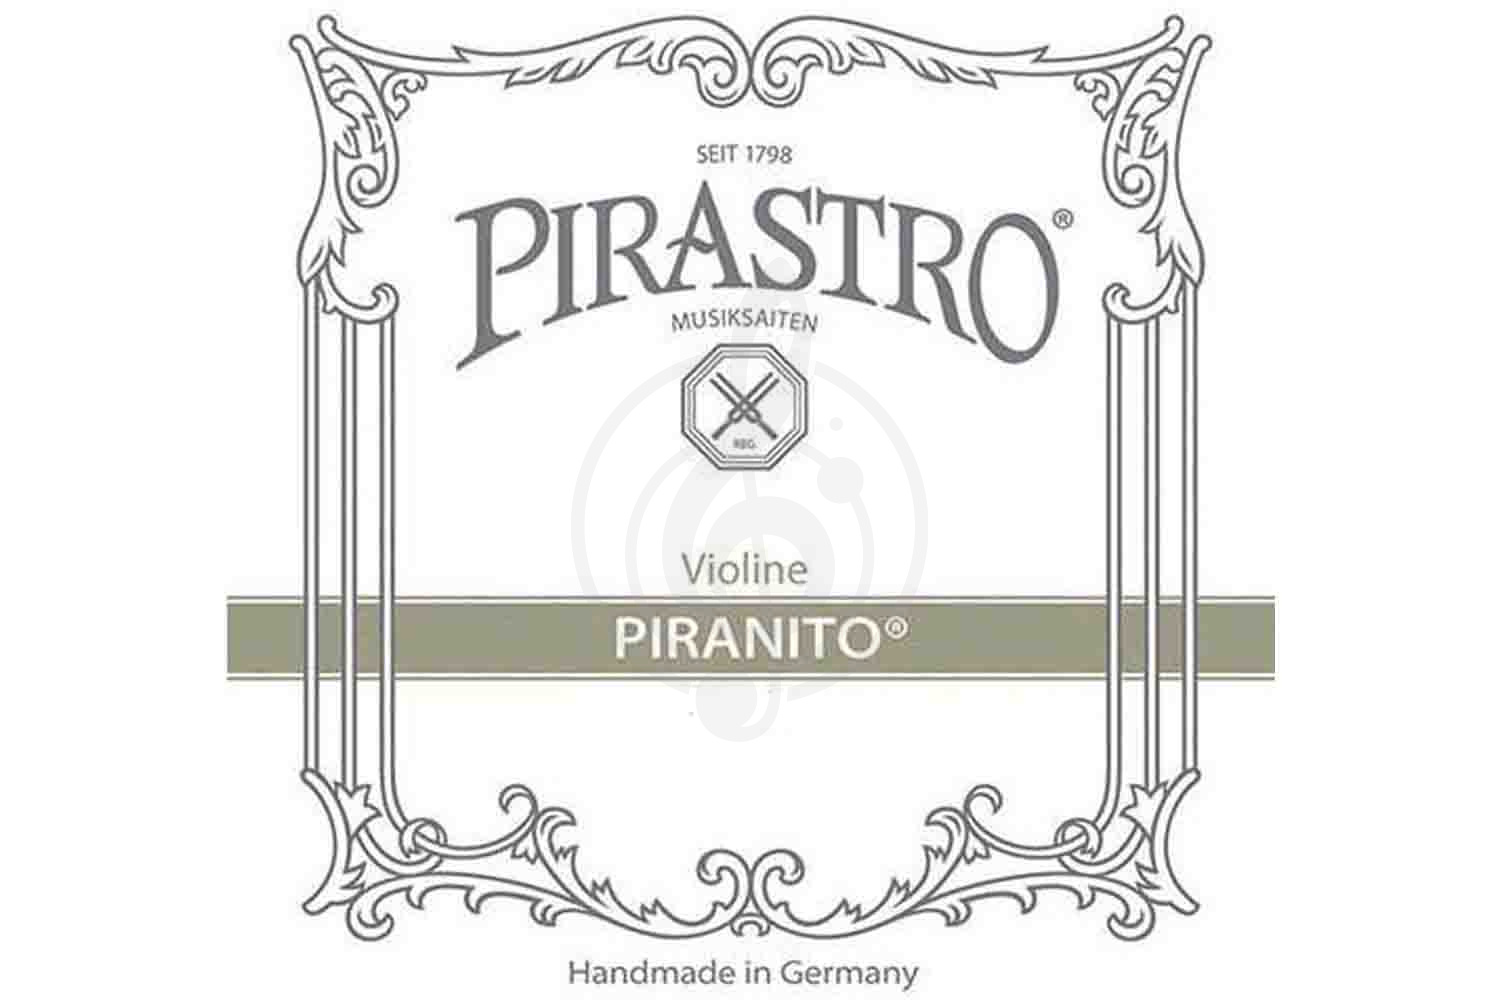 Струны для скрипки Струны для скрипки Pirastro Pirastro 615500 Piranito 4/4 Violin - Комплект струн для скрипки 4/4 615500 - фото 1